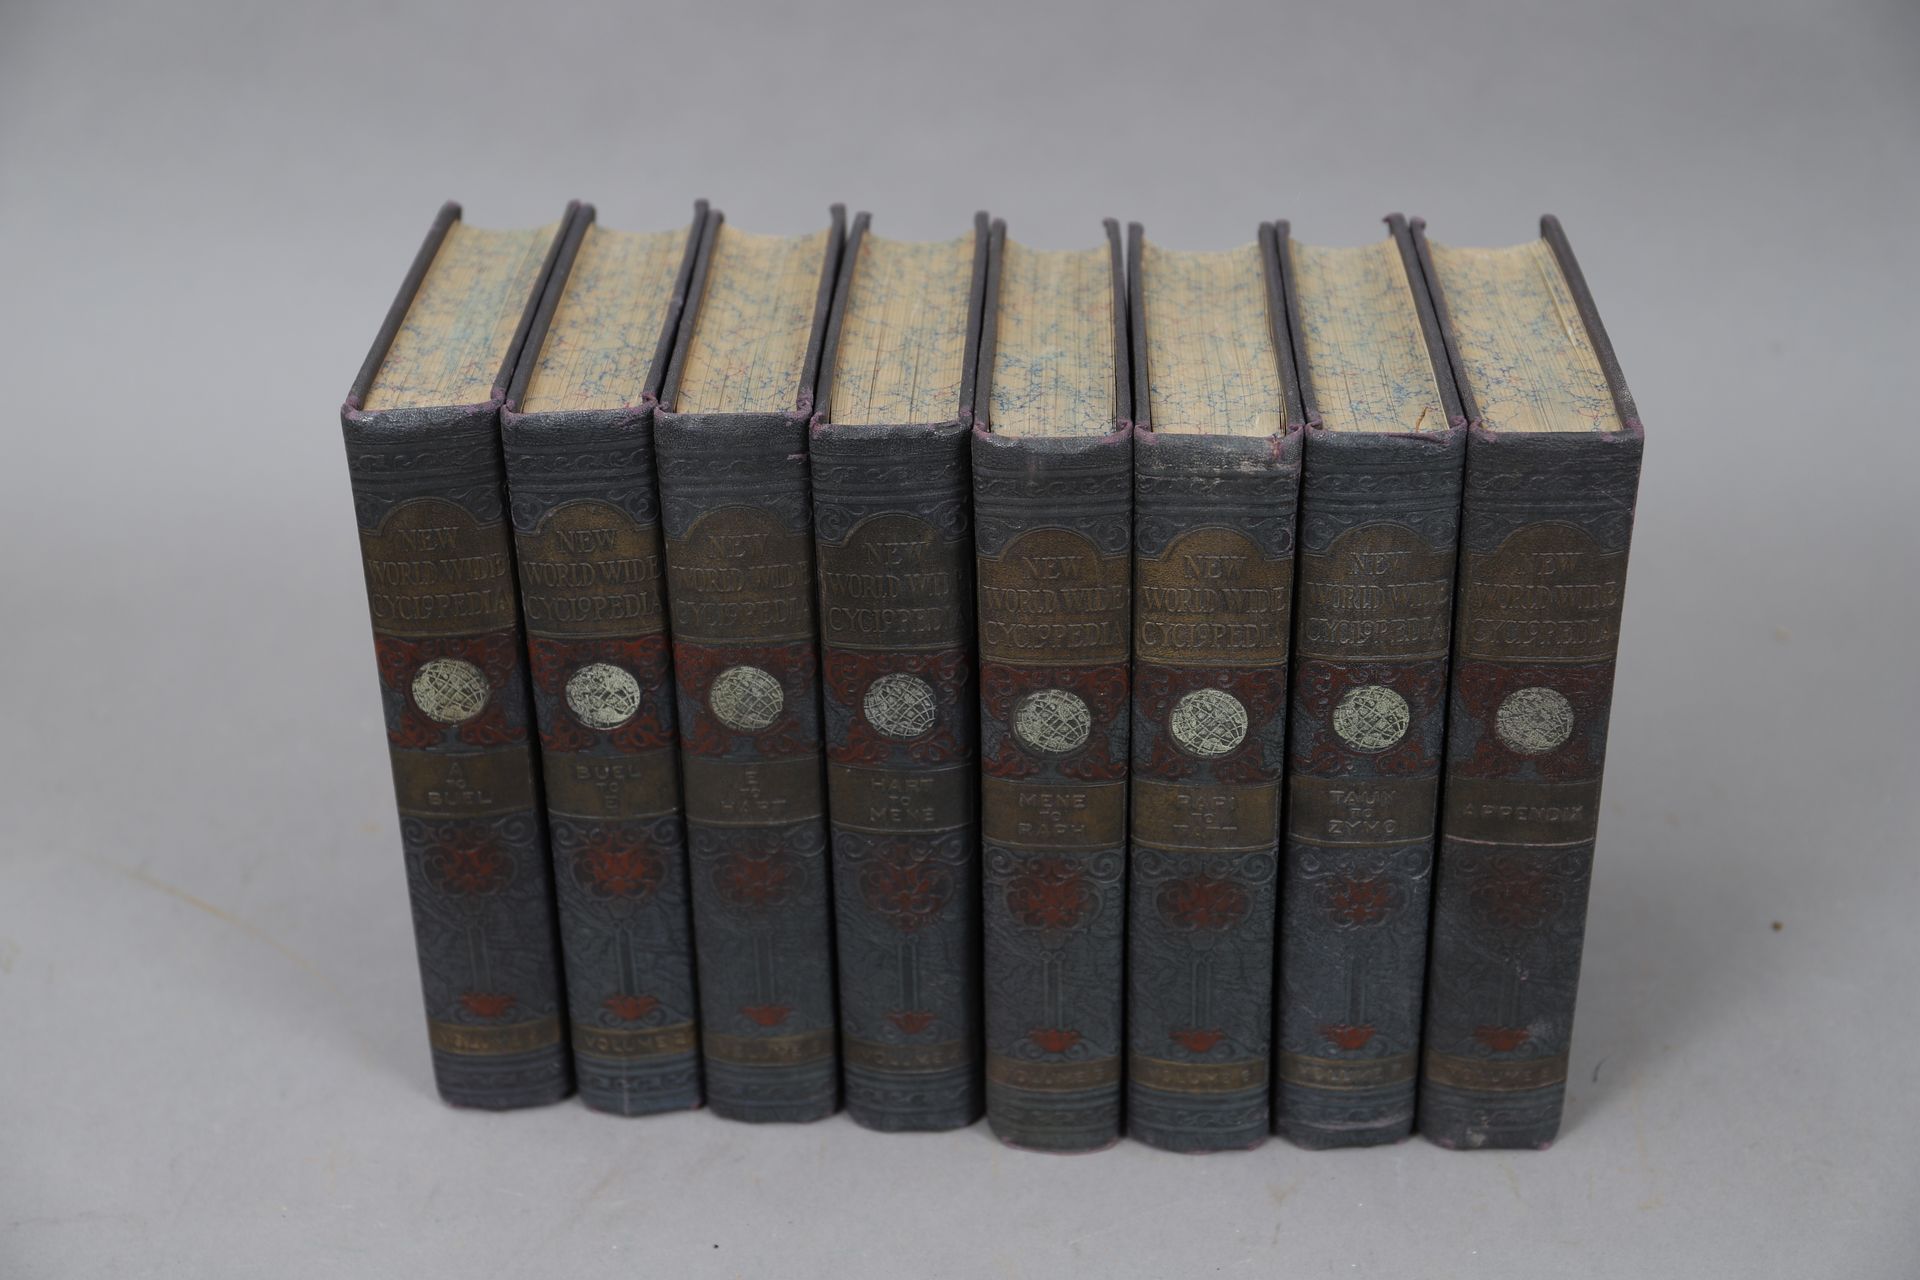 Null LA NUEVA ENCICLOPEDIA MUNDIAL.

CHICAGO 1928, 

8 volúmenes encuadernados.